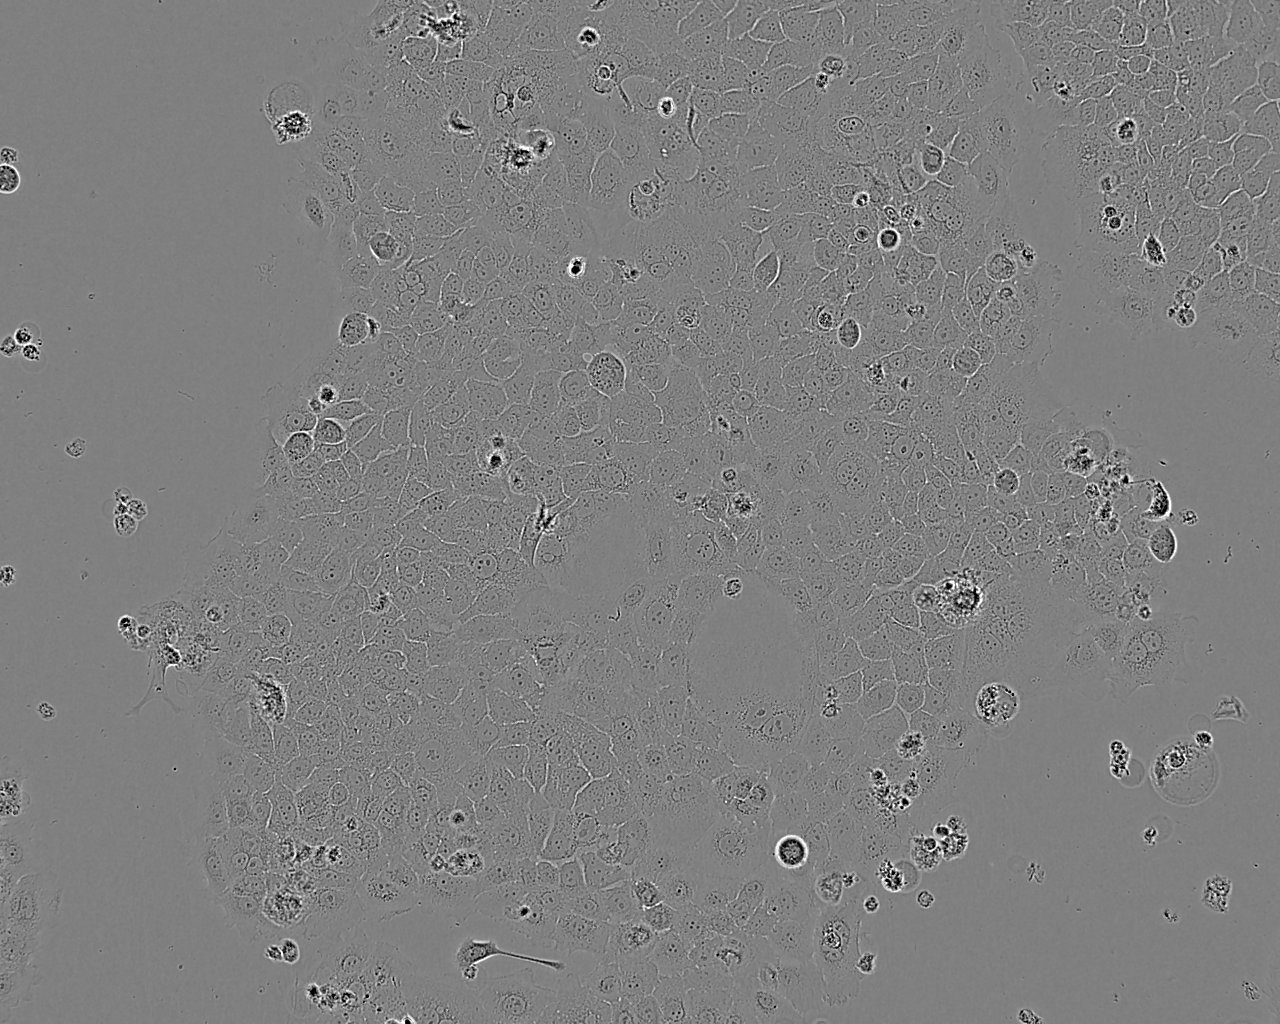 NCI-H3255 epithelioid cells人肺癌细胞系,NCI-H3255 epithelioid cells